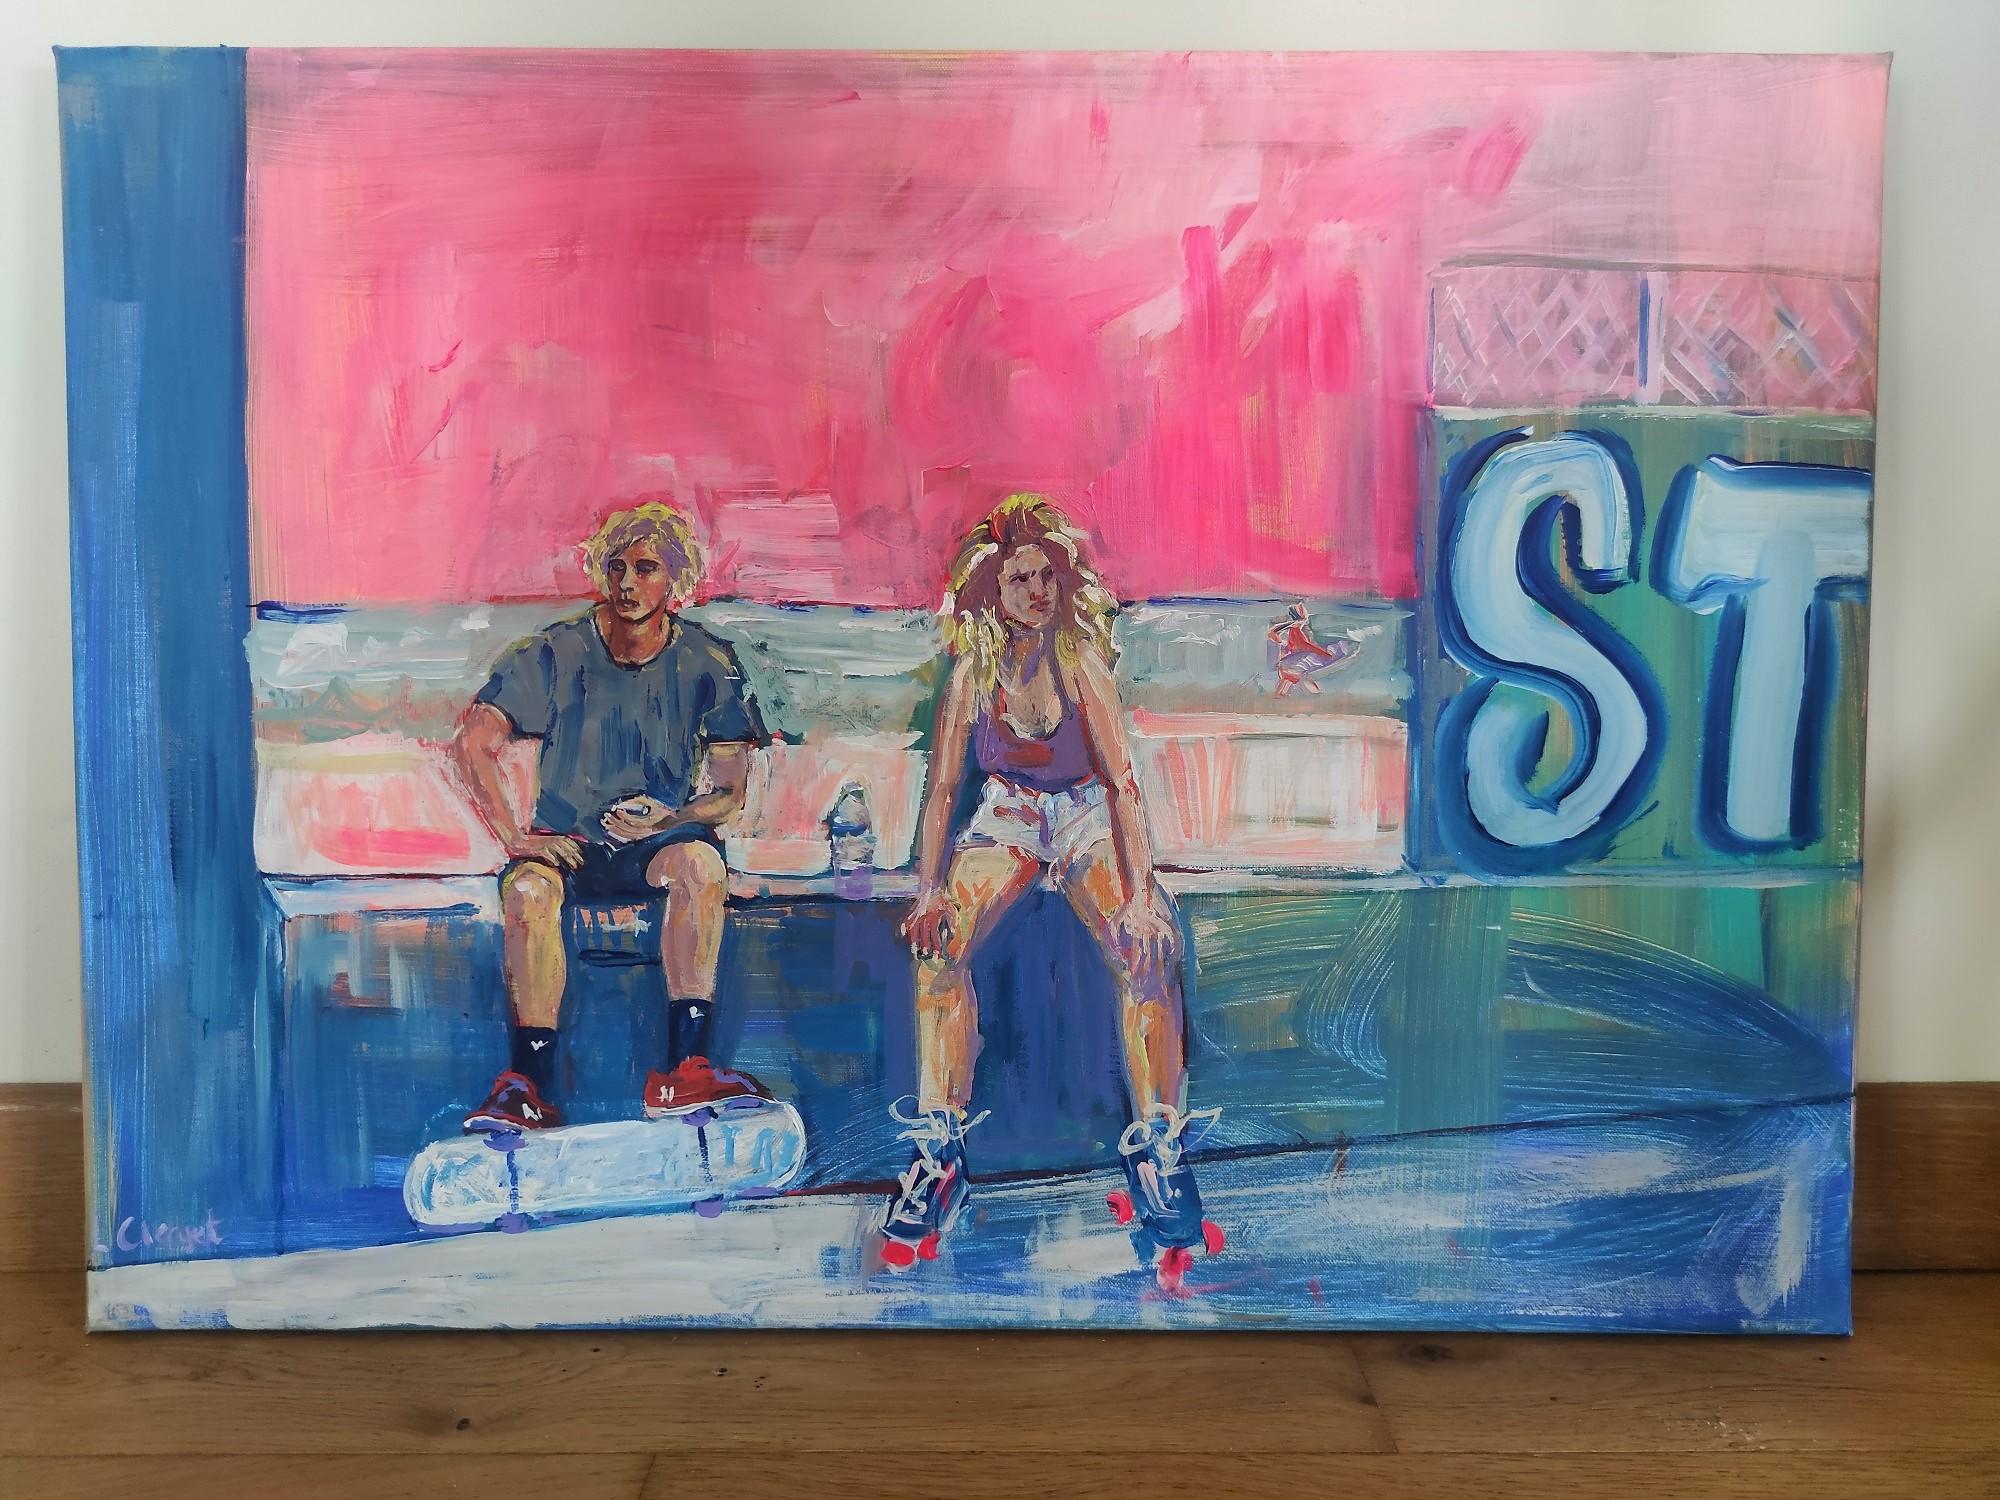 
Dieses Bild stammt aus der Serie 'Rollers & Skate'. Es wird mit Acrylfarbe alla prima auf eine Baumwollleinwand gemalt. Das Gemälde ist von der kalifornischen Skate- und Rollerblading-Kultur der 70er Jahre inspiriert.

Linda Clerget konzentriert